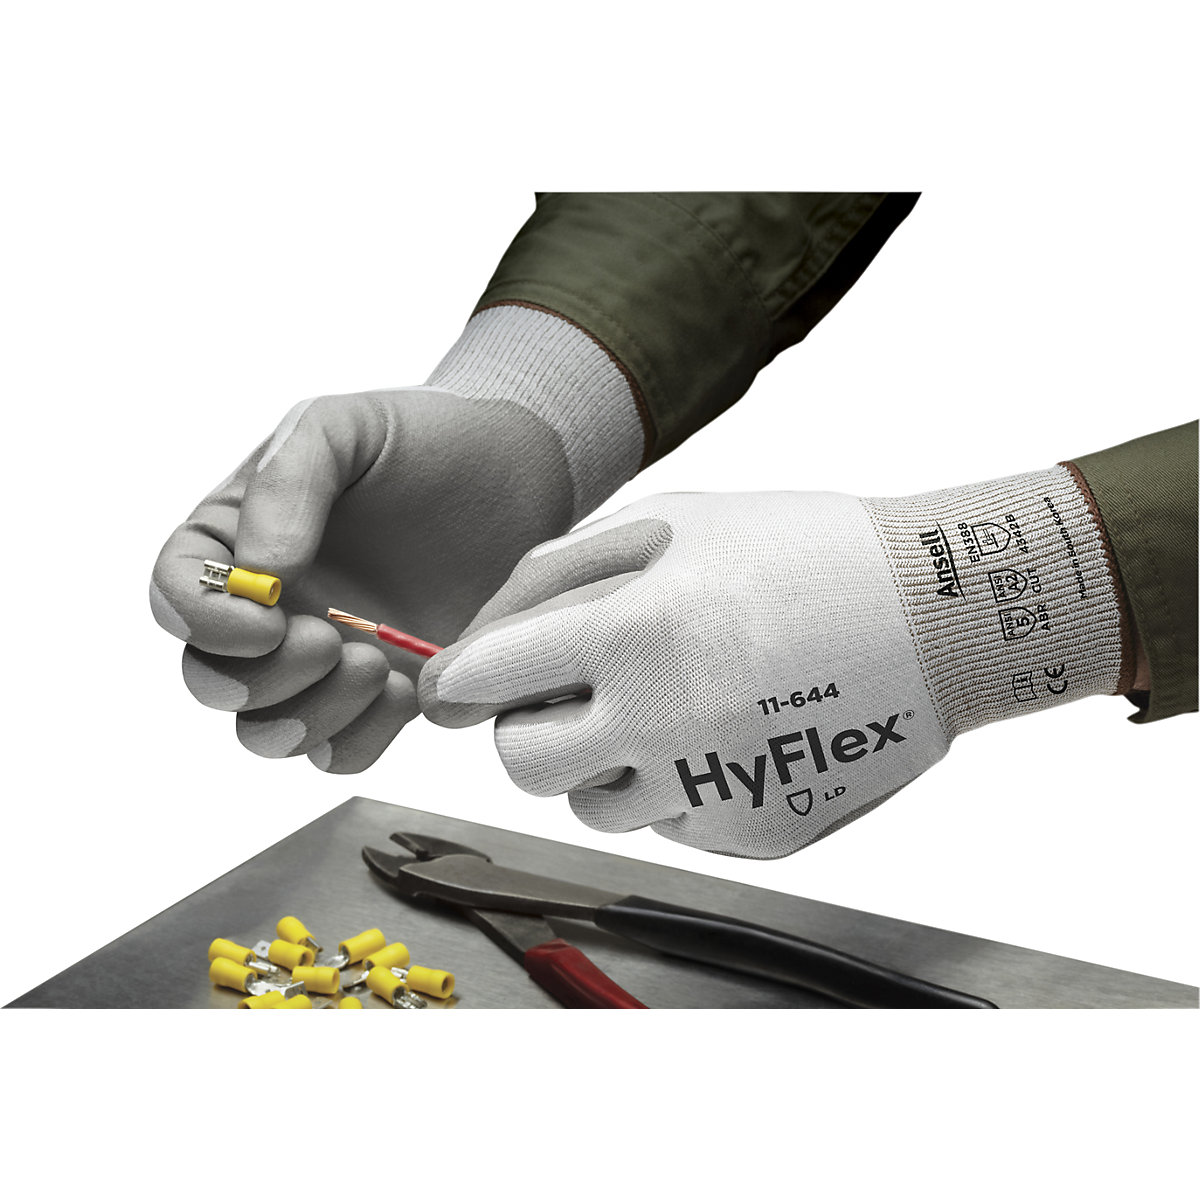 Guante de trabajo HyFlex® 11-644 – Ansell (Imagen del producto 5)-4